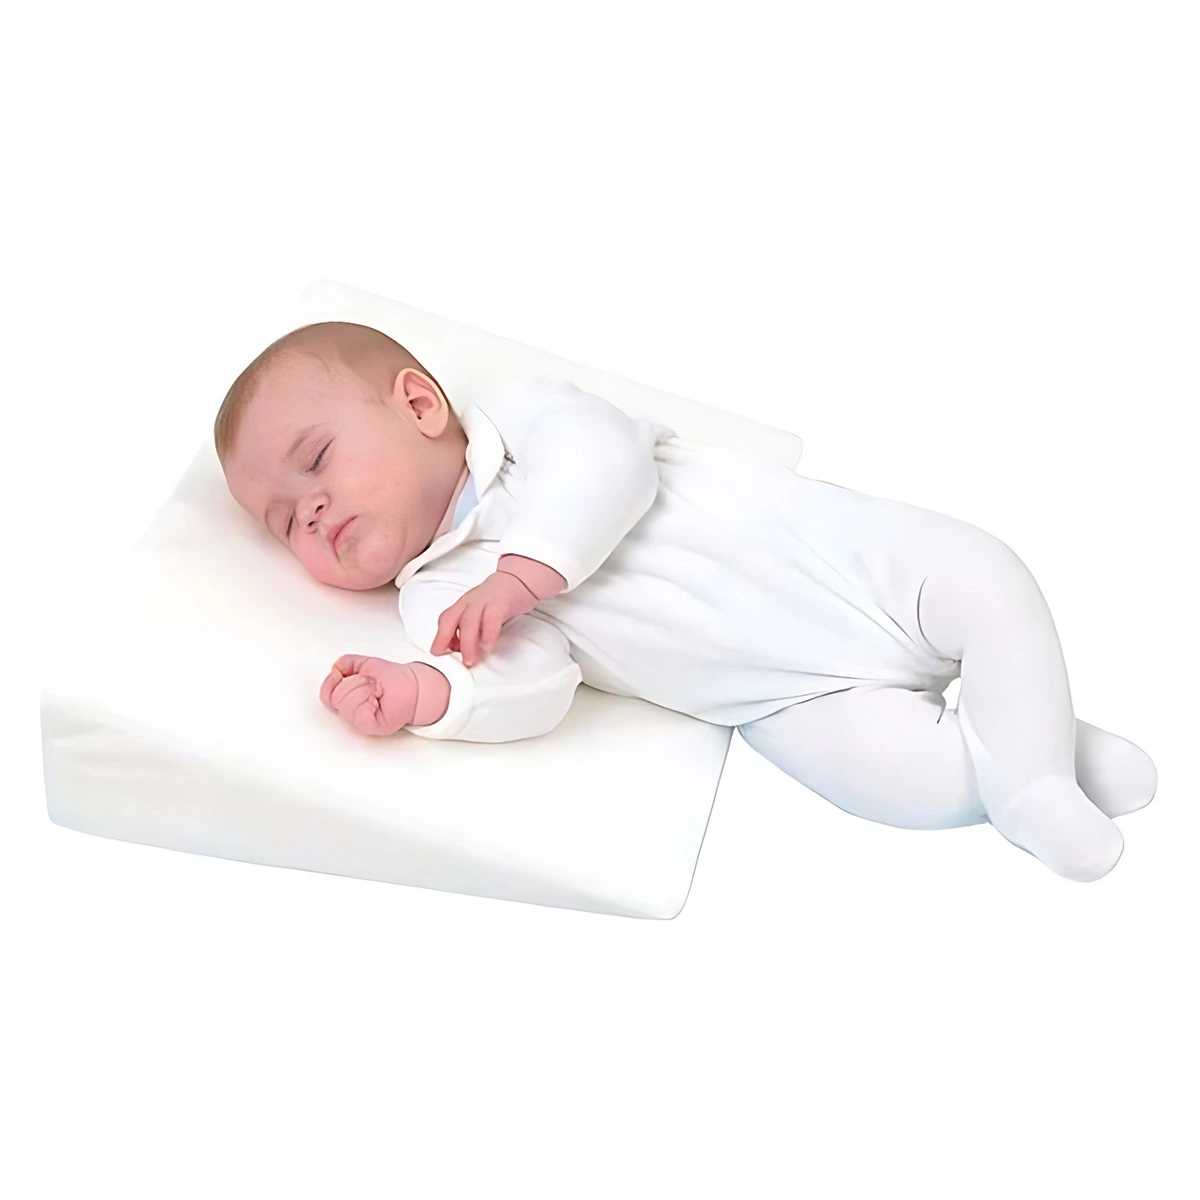 Kosi jastuk za bebe